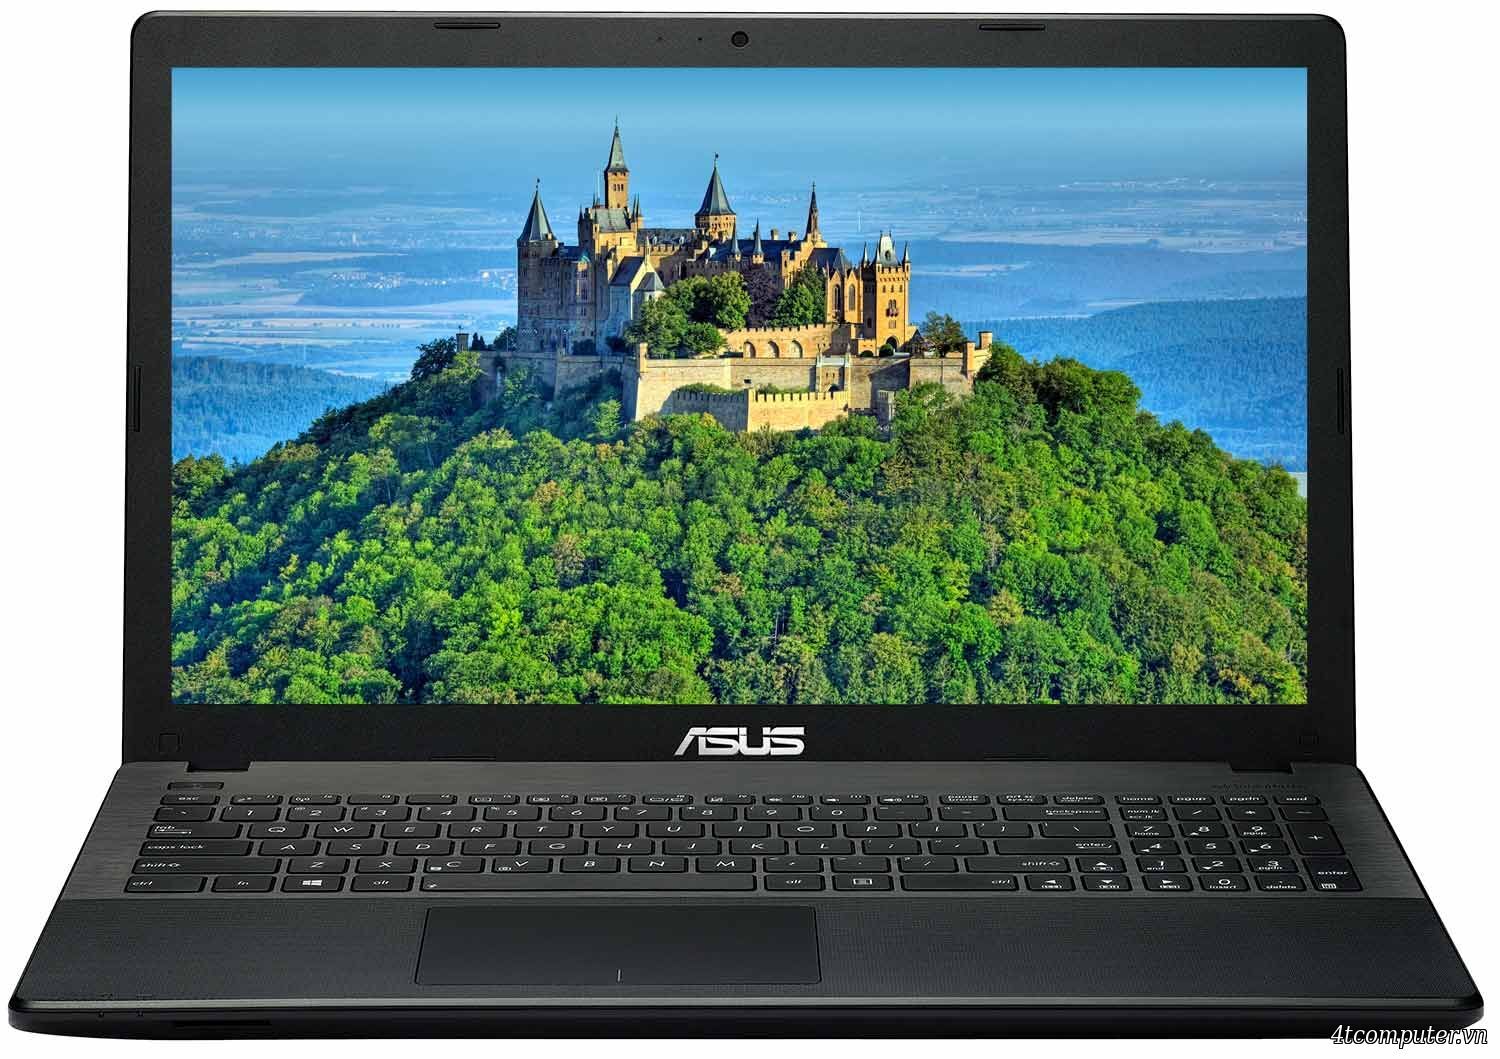 Laptop Asus X551CA-SX024D - Intel Core i3-3217U 1.8GHz, 4GB RAM, 500GB HDD, Intel HD Graphics 4000, 15.6 inch